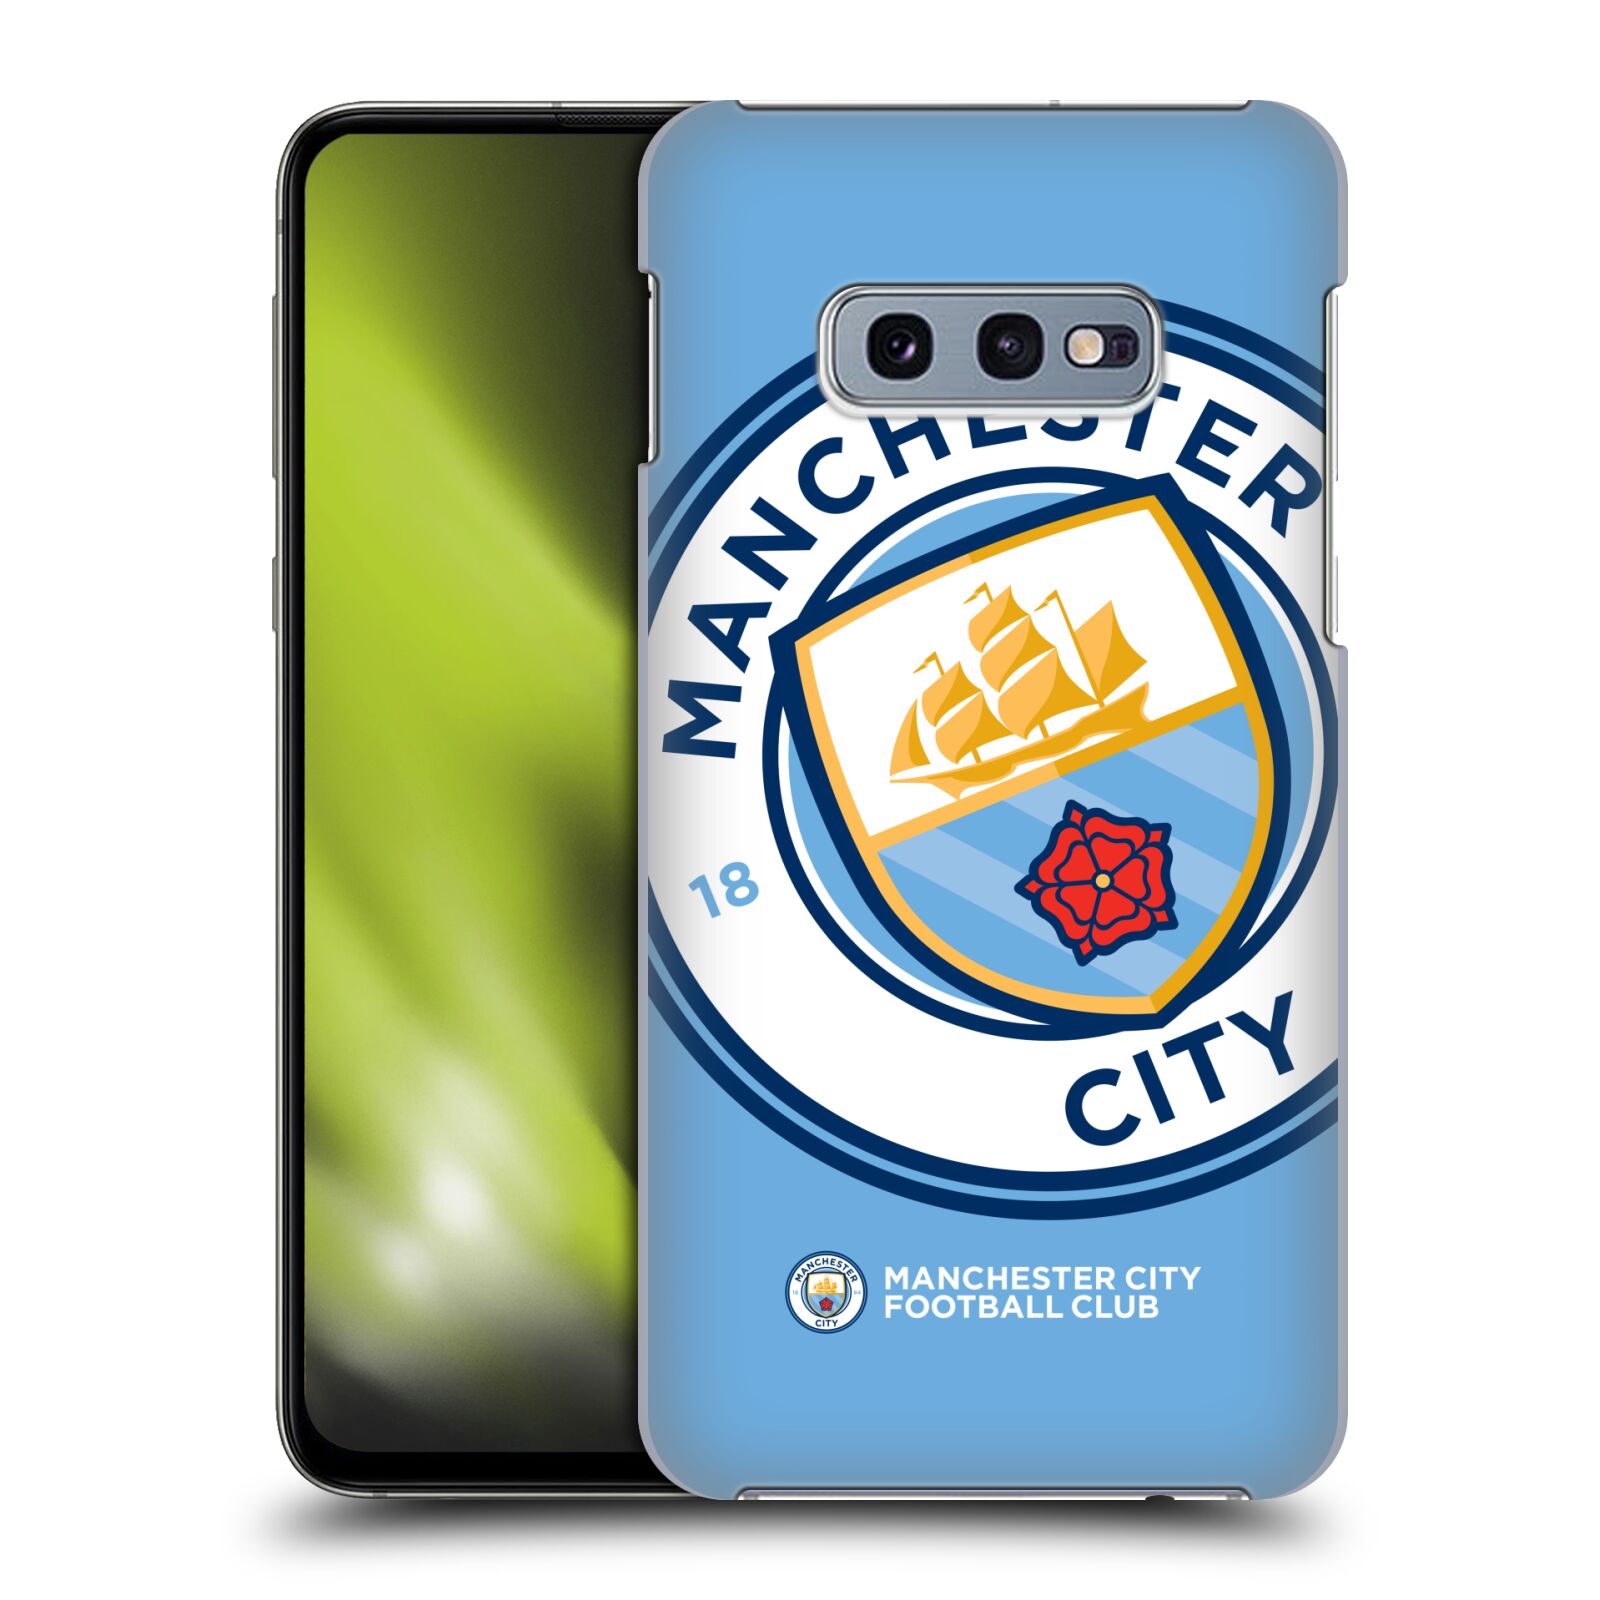 Pouzdro na mobil Samsung Galaxy S10e - HEAD CASE - Fotbalový klub Manchester City modrý velký přesahující znak